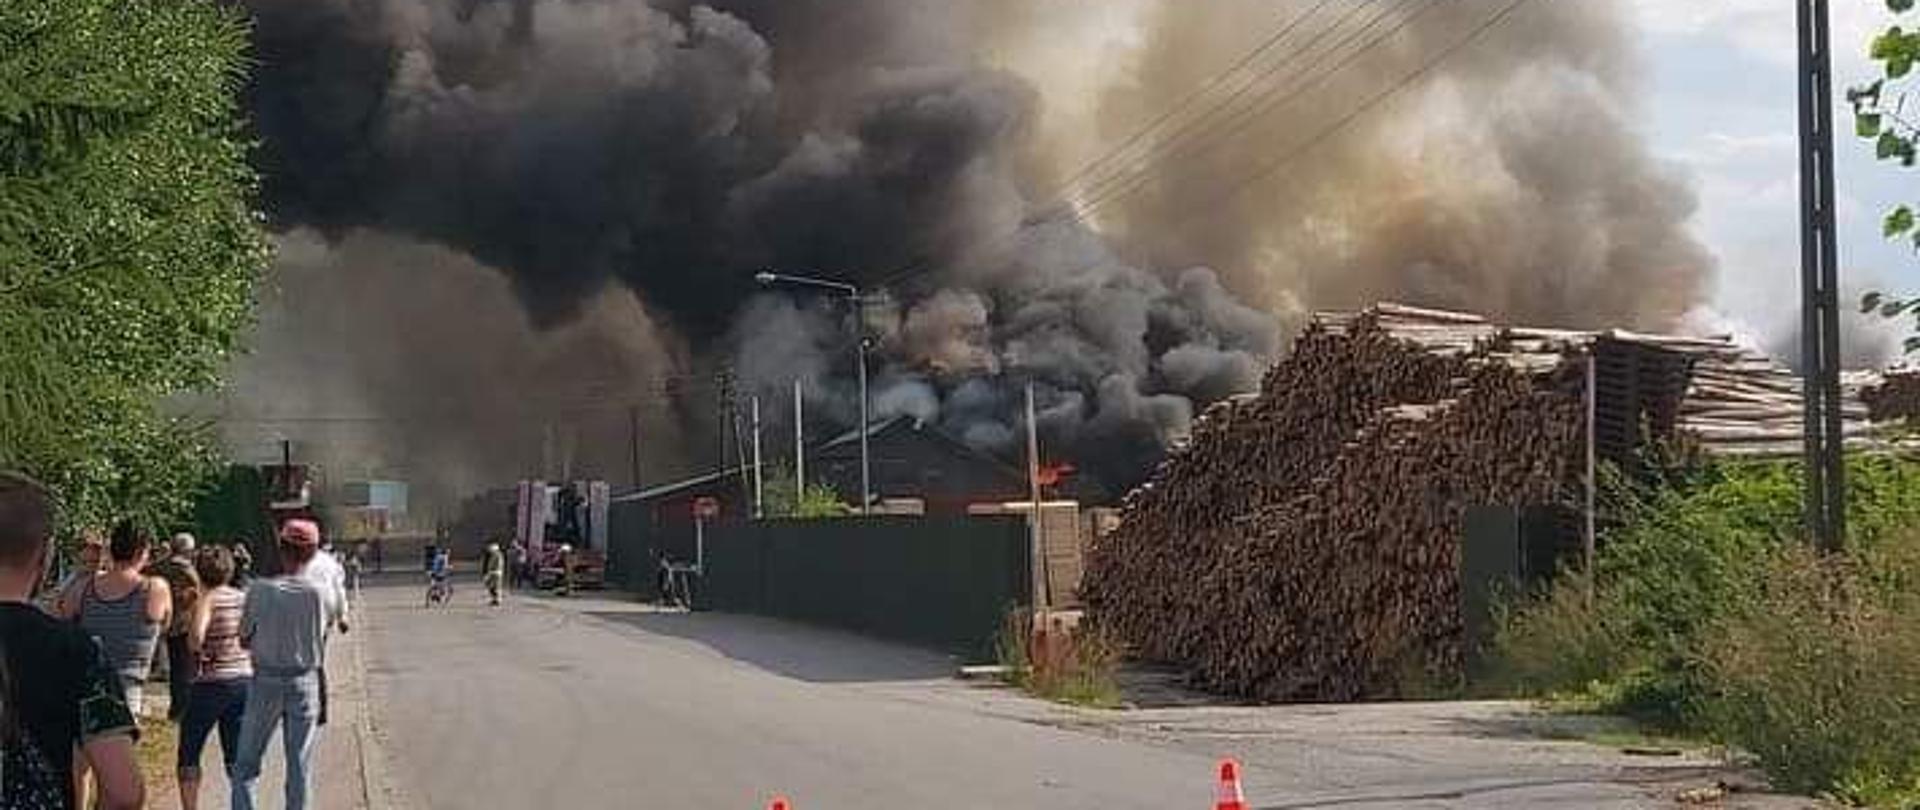 Zdjęcia przedstawiają pożar tartaku w Bystrej Podhalańskiej